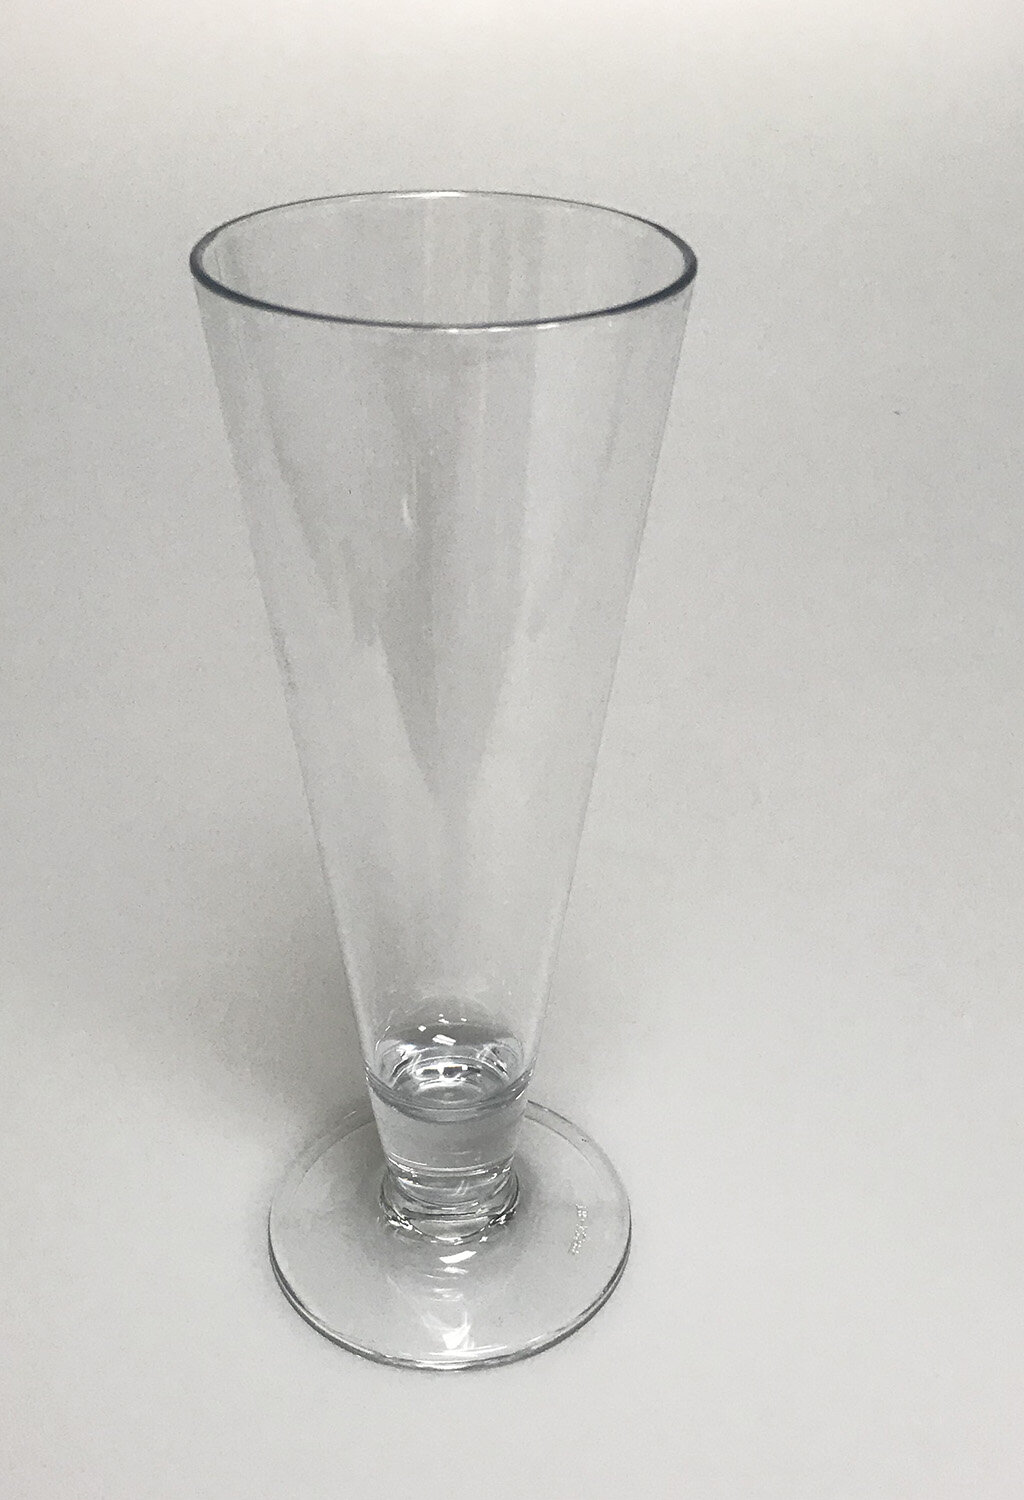 Plastic Pilsner Glasses, 16 oz Plastic Beer Glasses, Pilsner Beer  Glasses, Unbreakable, Dishwasher-Safe, BPA Free(Set of 4): Beer Glasses